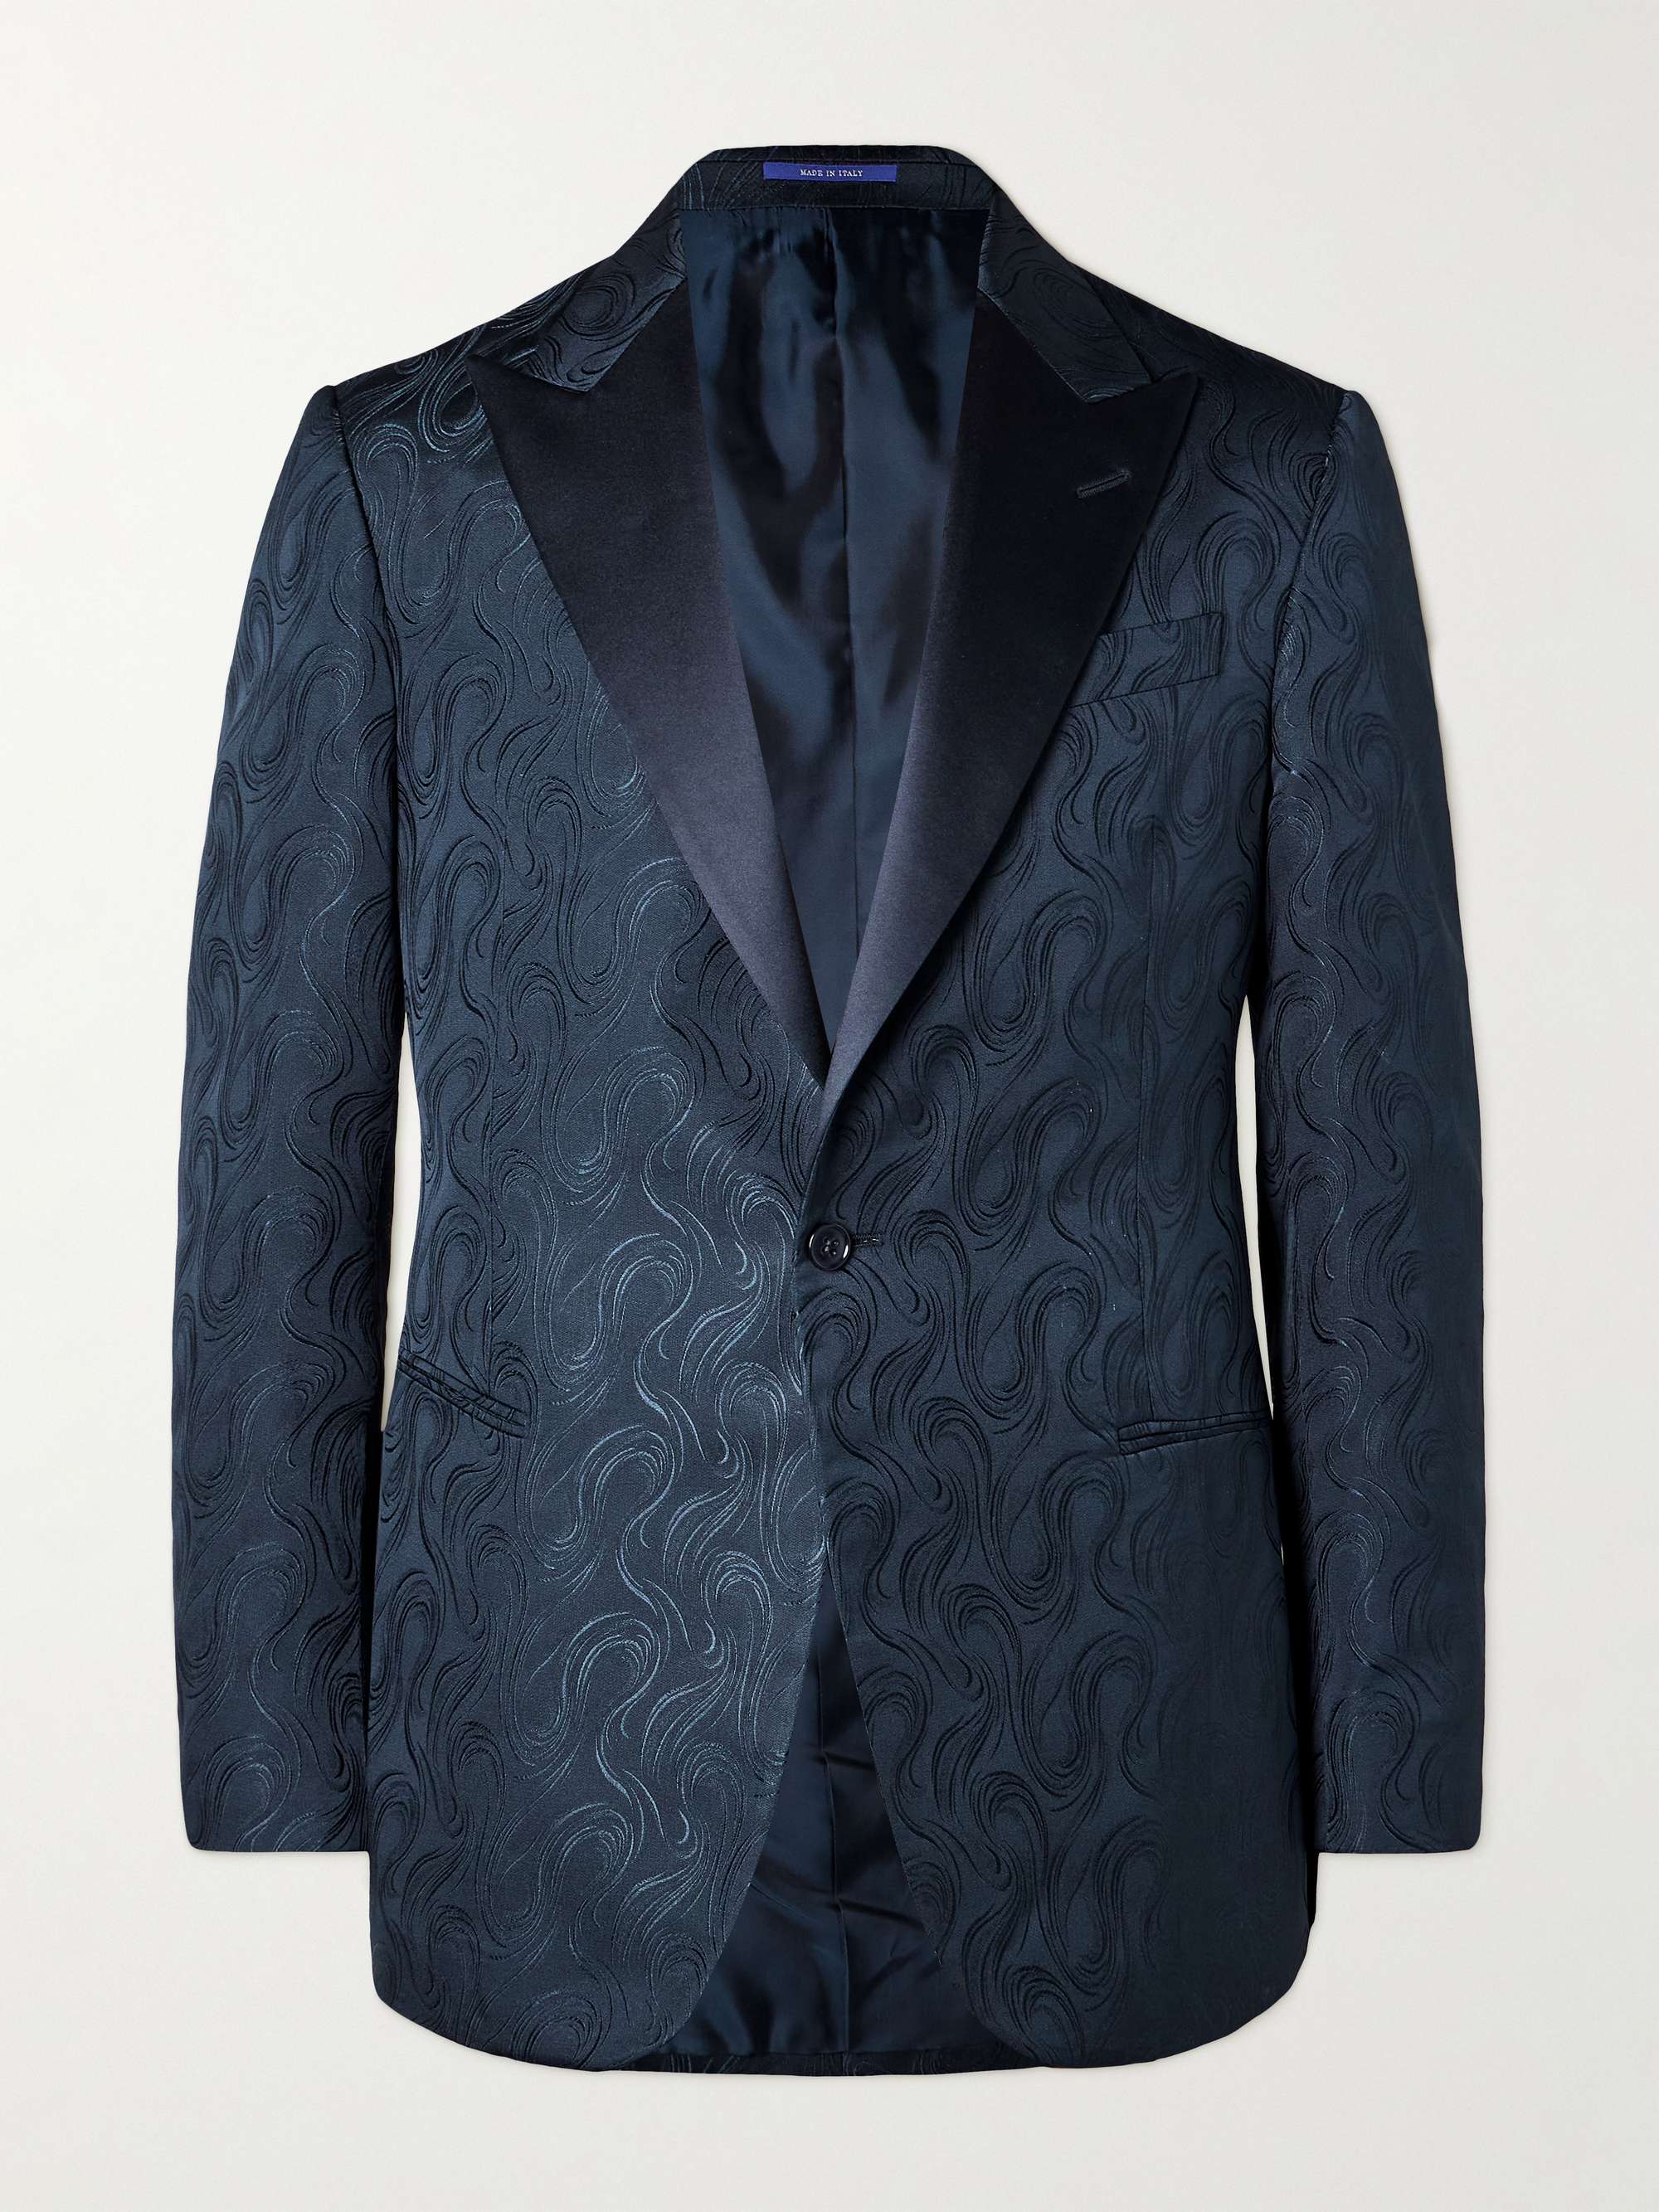 RALPH LAUREN PURPLE LABEL Silk Jacquard Suit Jacket for Men | MR PORTER